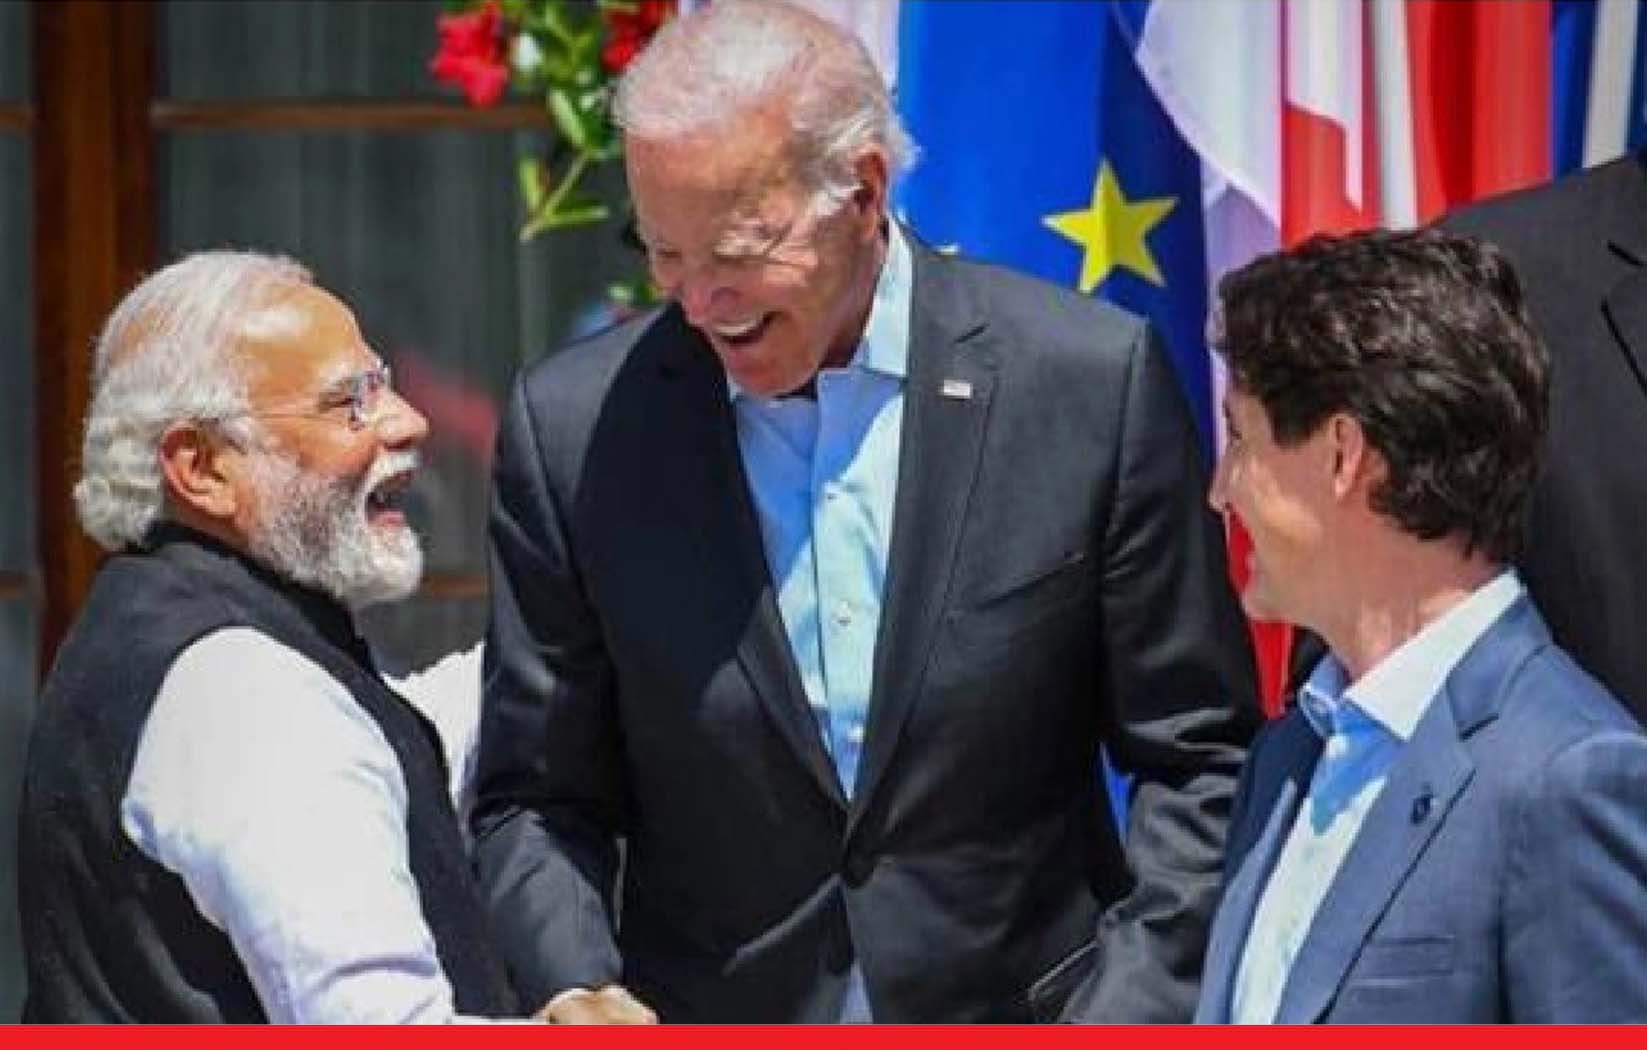 प्रधानमंत्री नरेंद्र मोदी का कायम है जलवा, जी-7 शिखर सम्मेलन में लोकप्रियता के मामले में टॉप पर